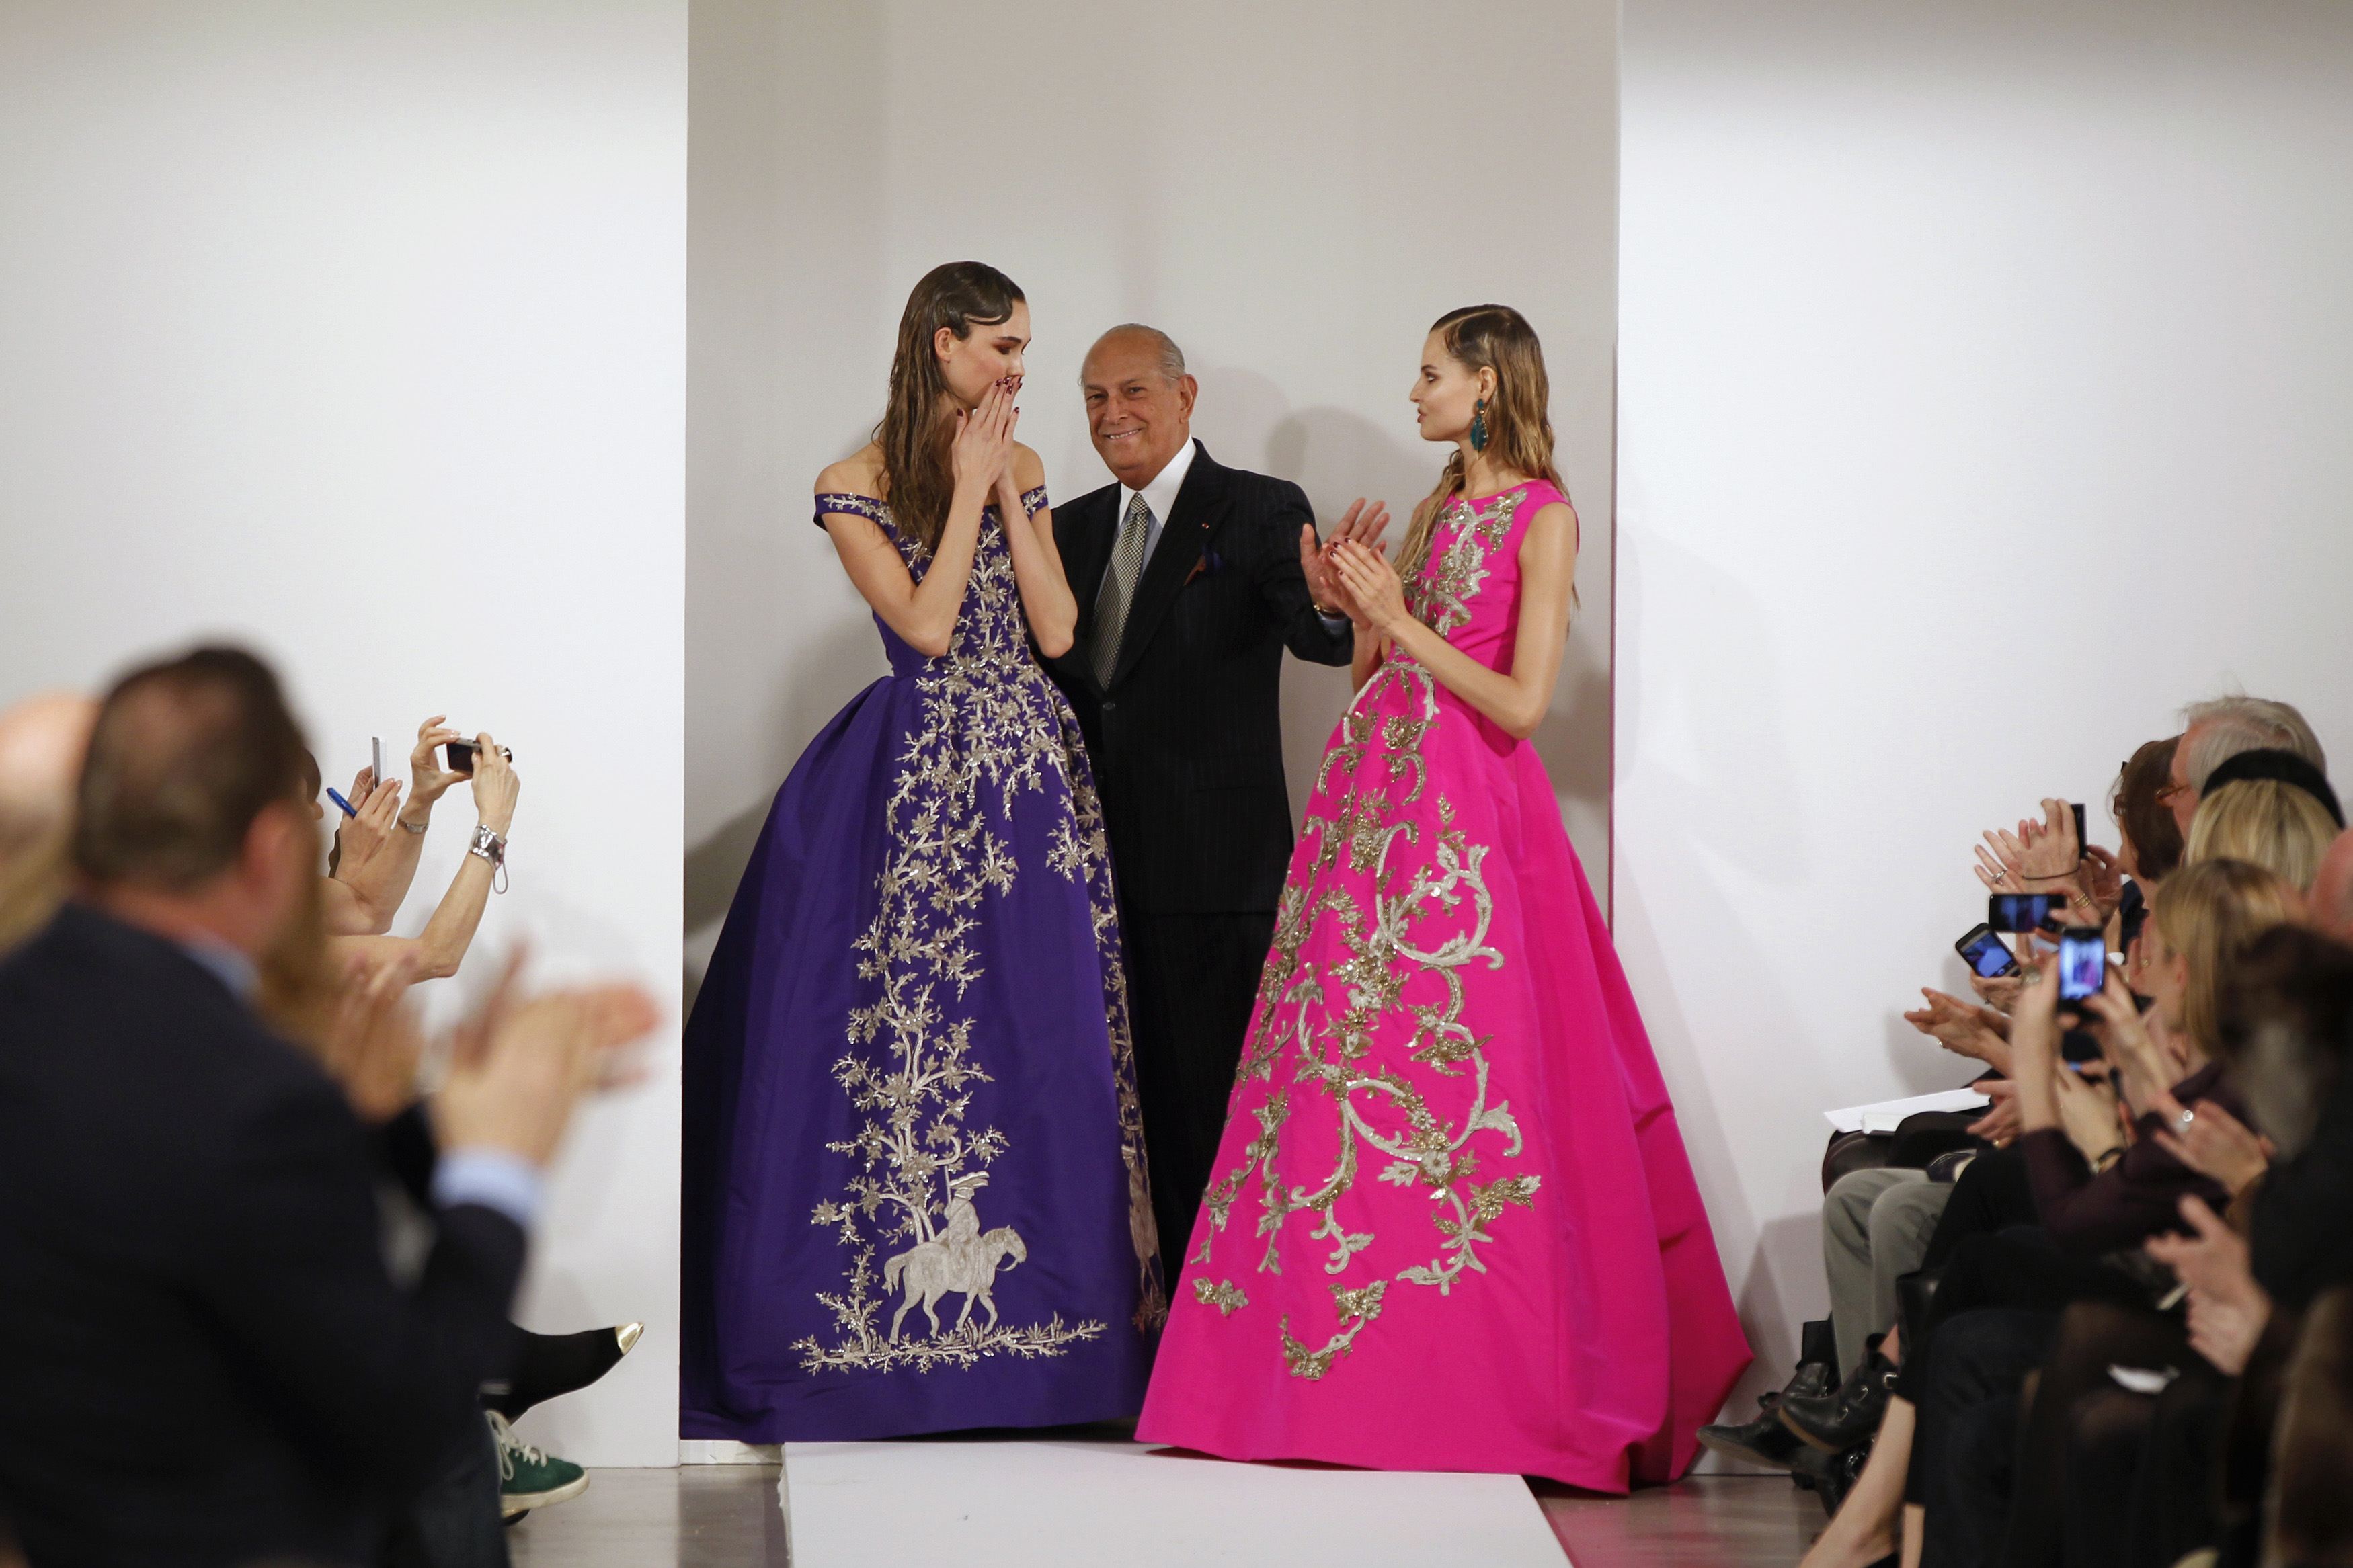 Oscar de la Renta, primer latinoamericano que abrió puertas en el exclusivo mundo de la moda